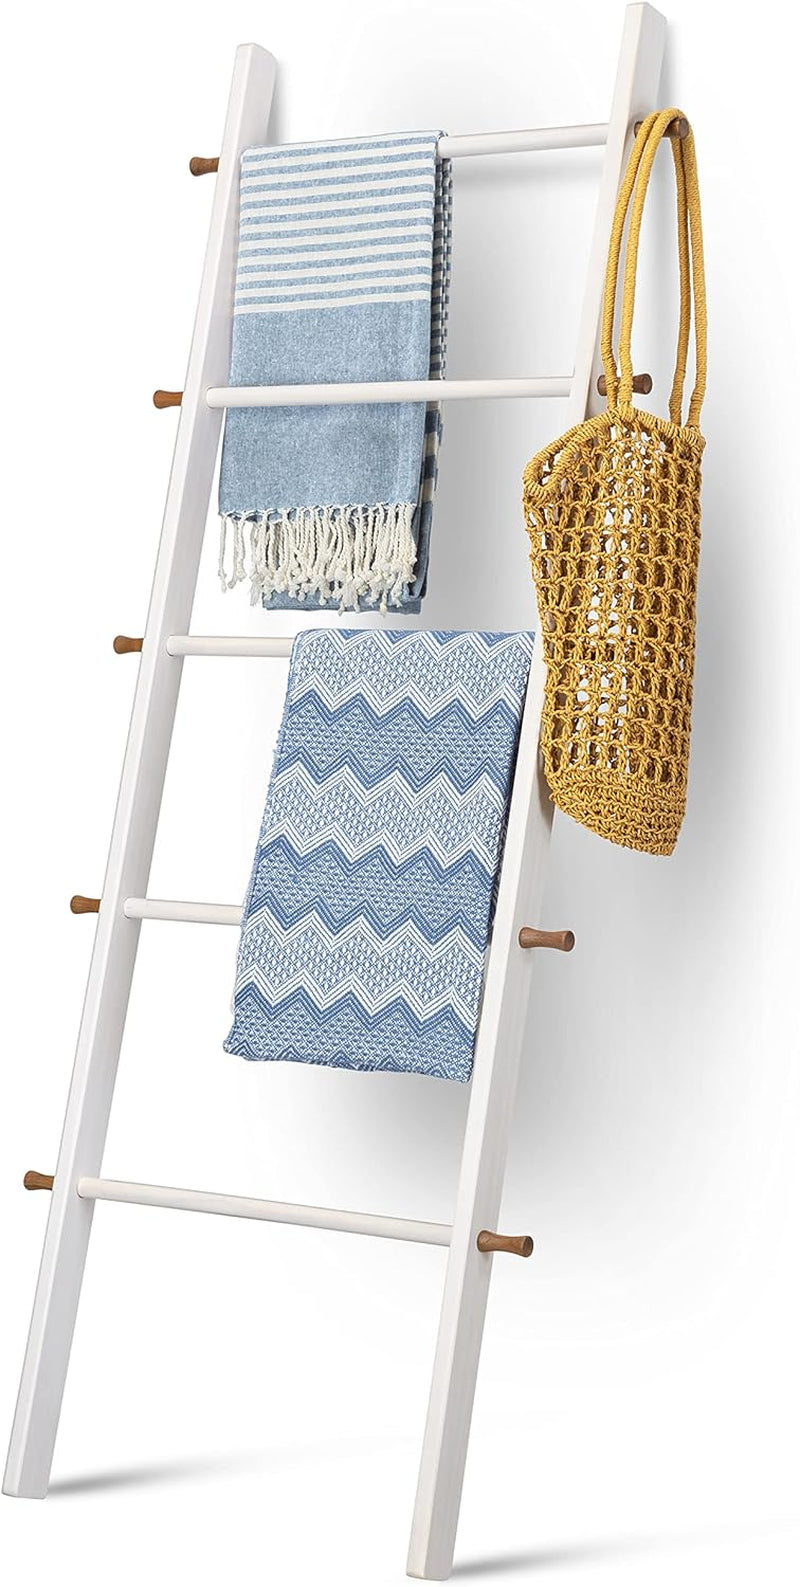 5 Ft Wooden Blanket Ladder Farmhouse - Quilt Ladder for Bedroom - Wood Ladder Decor - Decorative Ladder for Blankets - Easy to Assemble - Farmhouse Ladder Blanket Holder - Wooden Ladder for Blankets